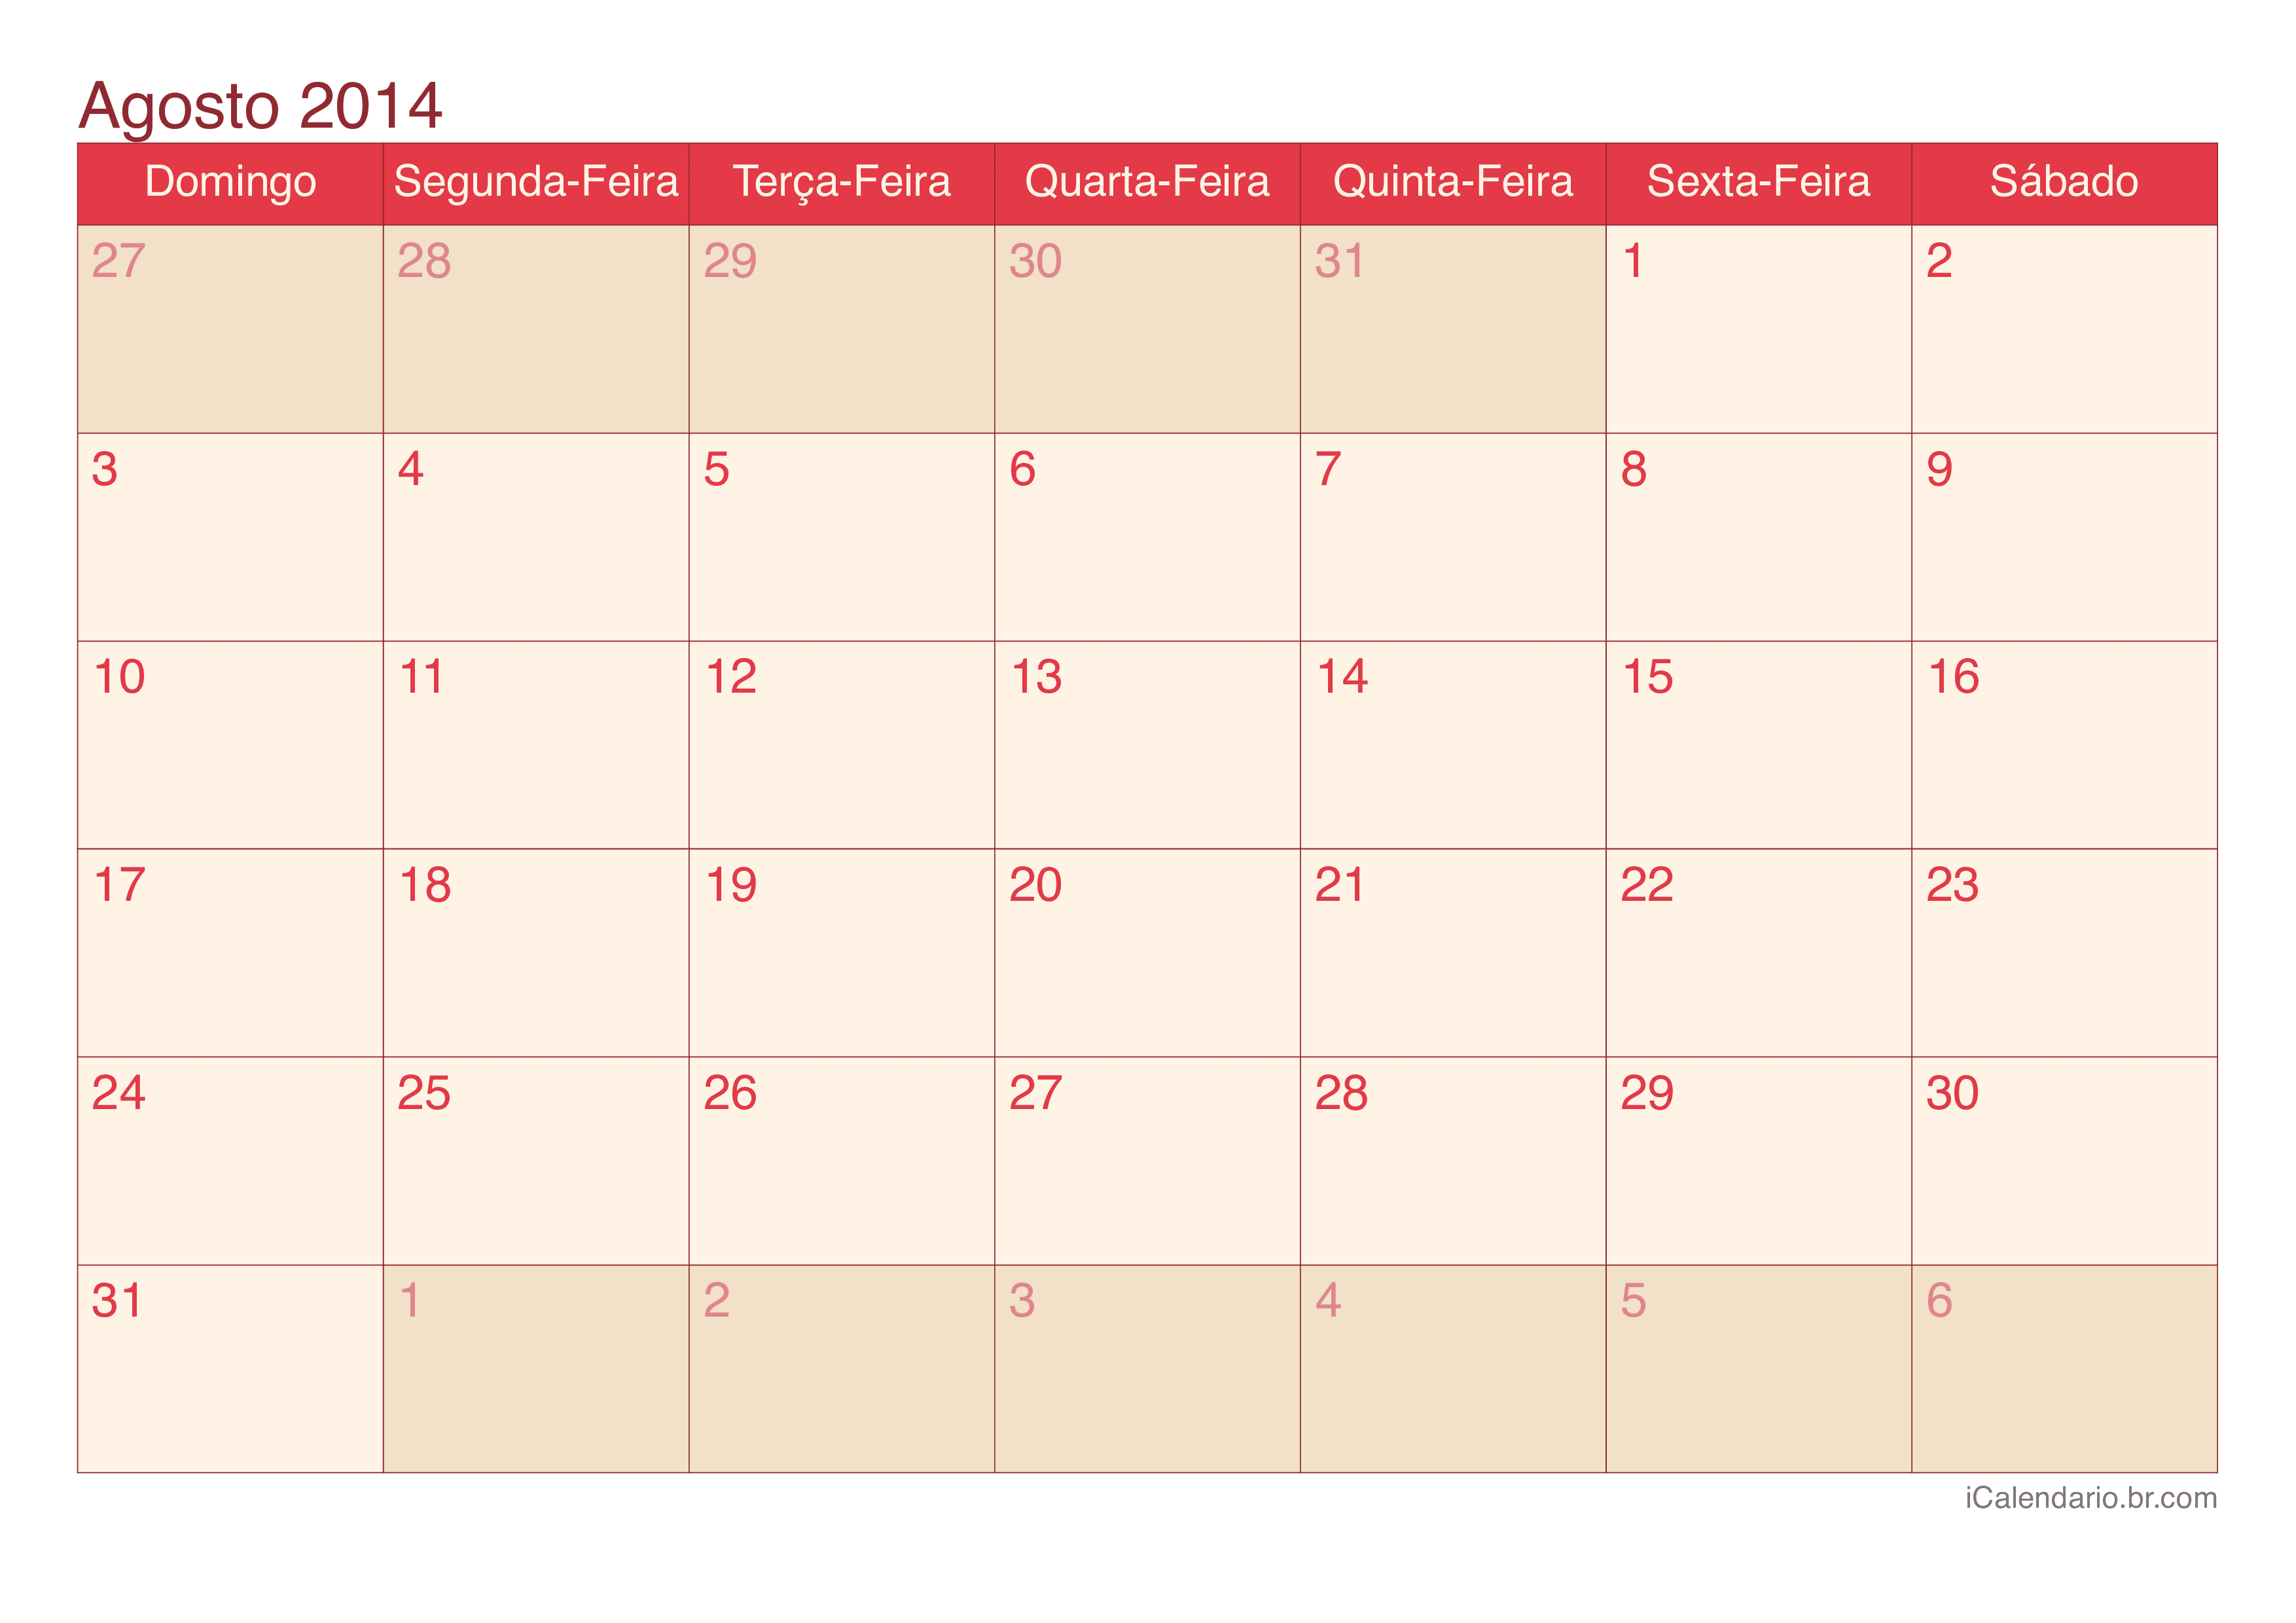 Calendário de agosto 2014 - Cherry